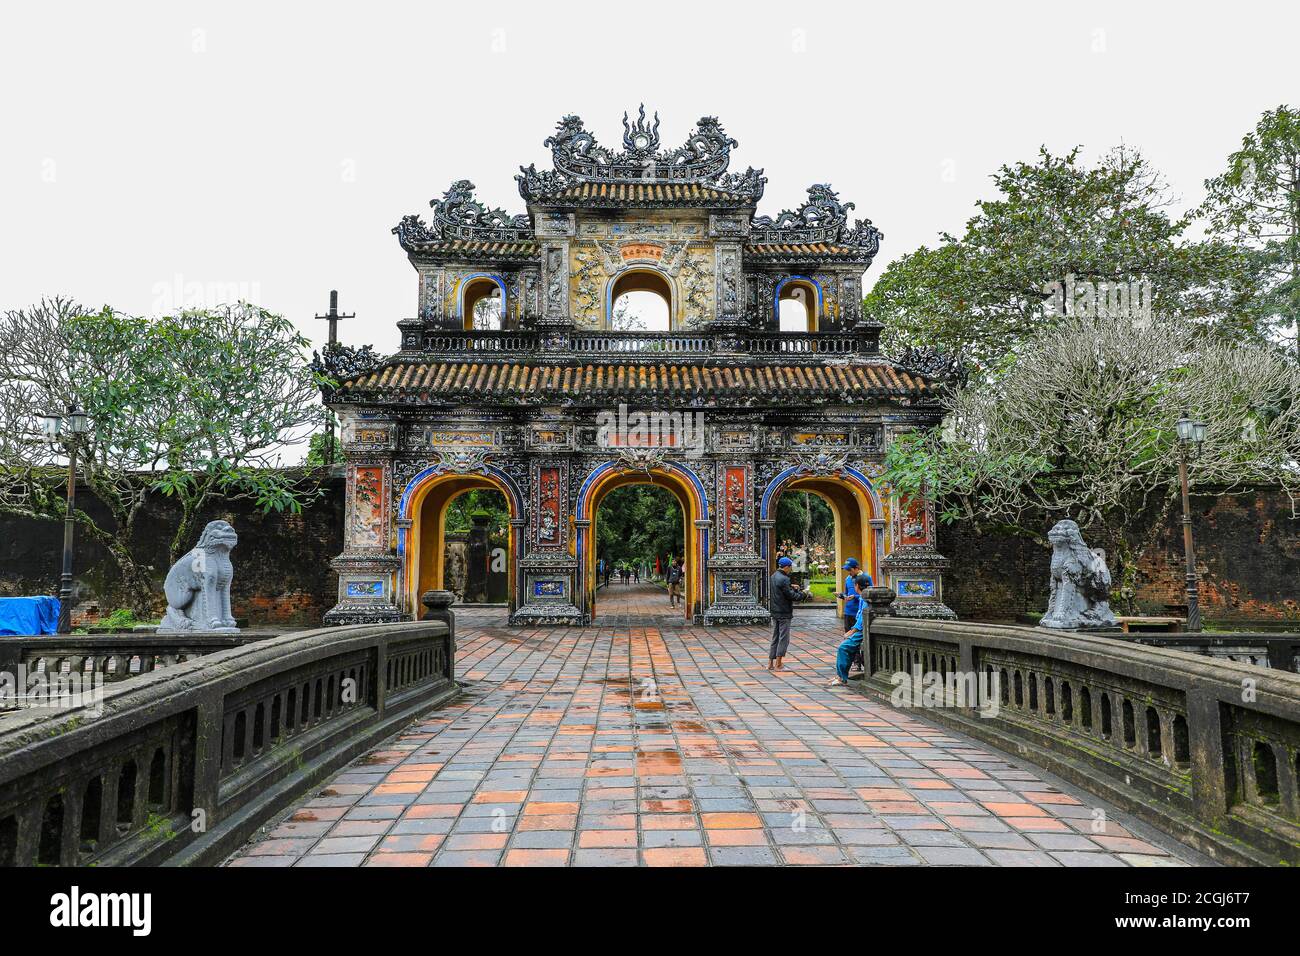 Hien Nhon porta della città imperiale, un recinto murato all'interno della cittadella della città di Huế, Vietnam, Sud-Est asiatico, Asia Foto Stock